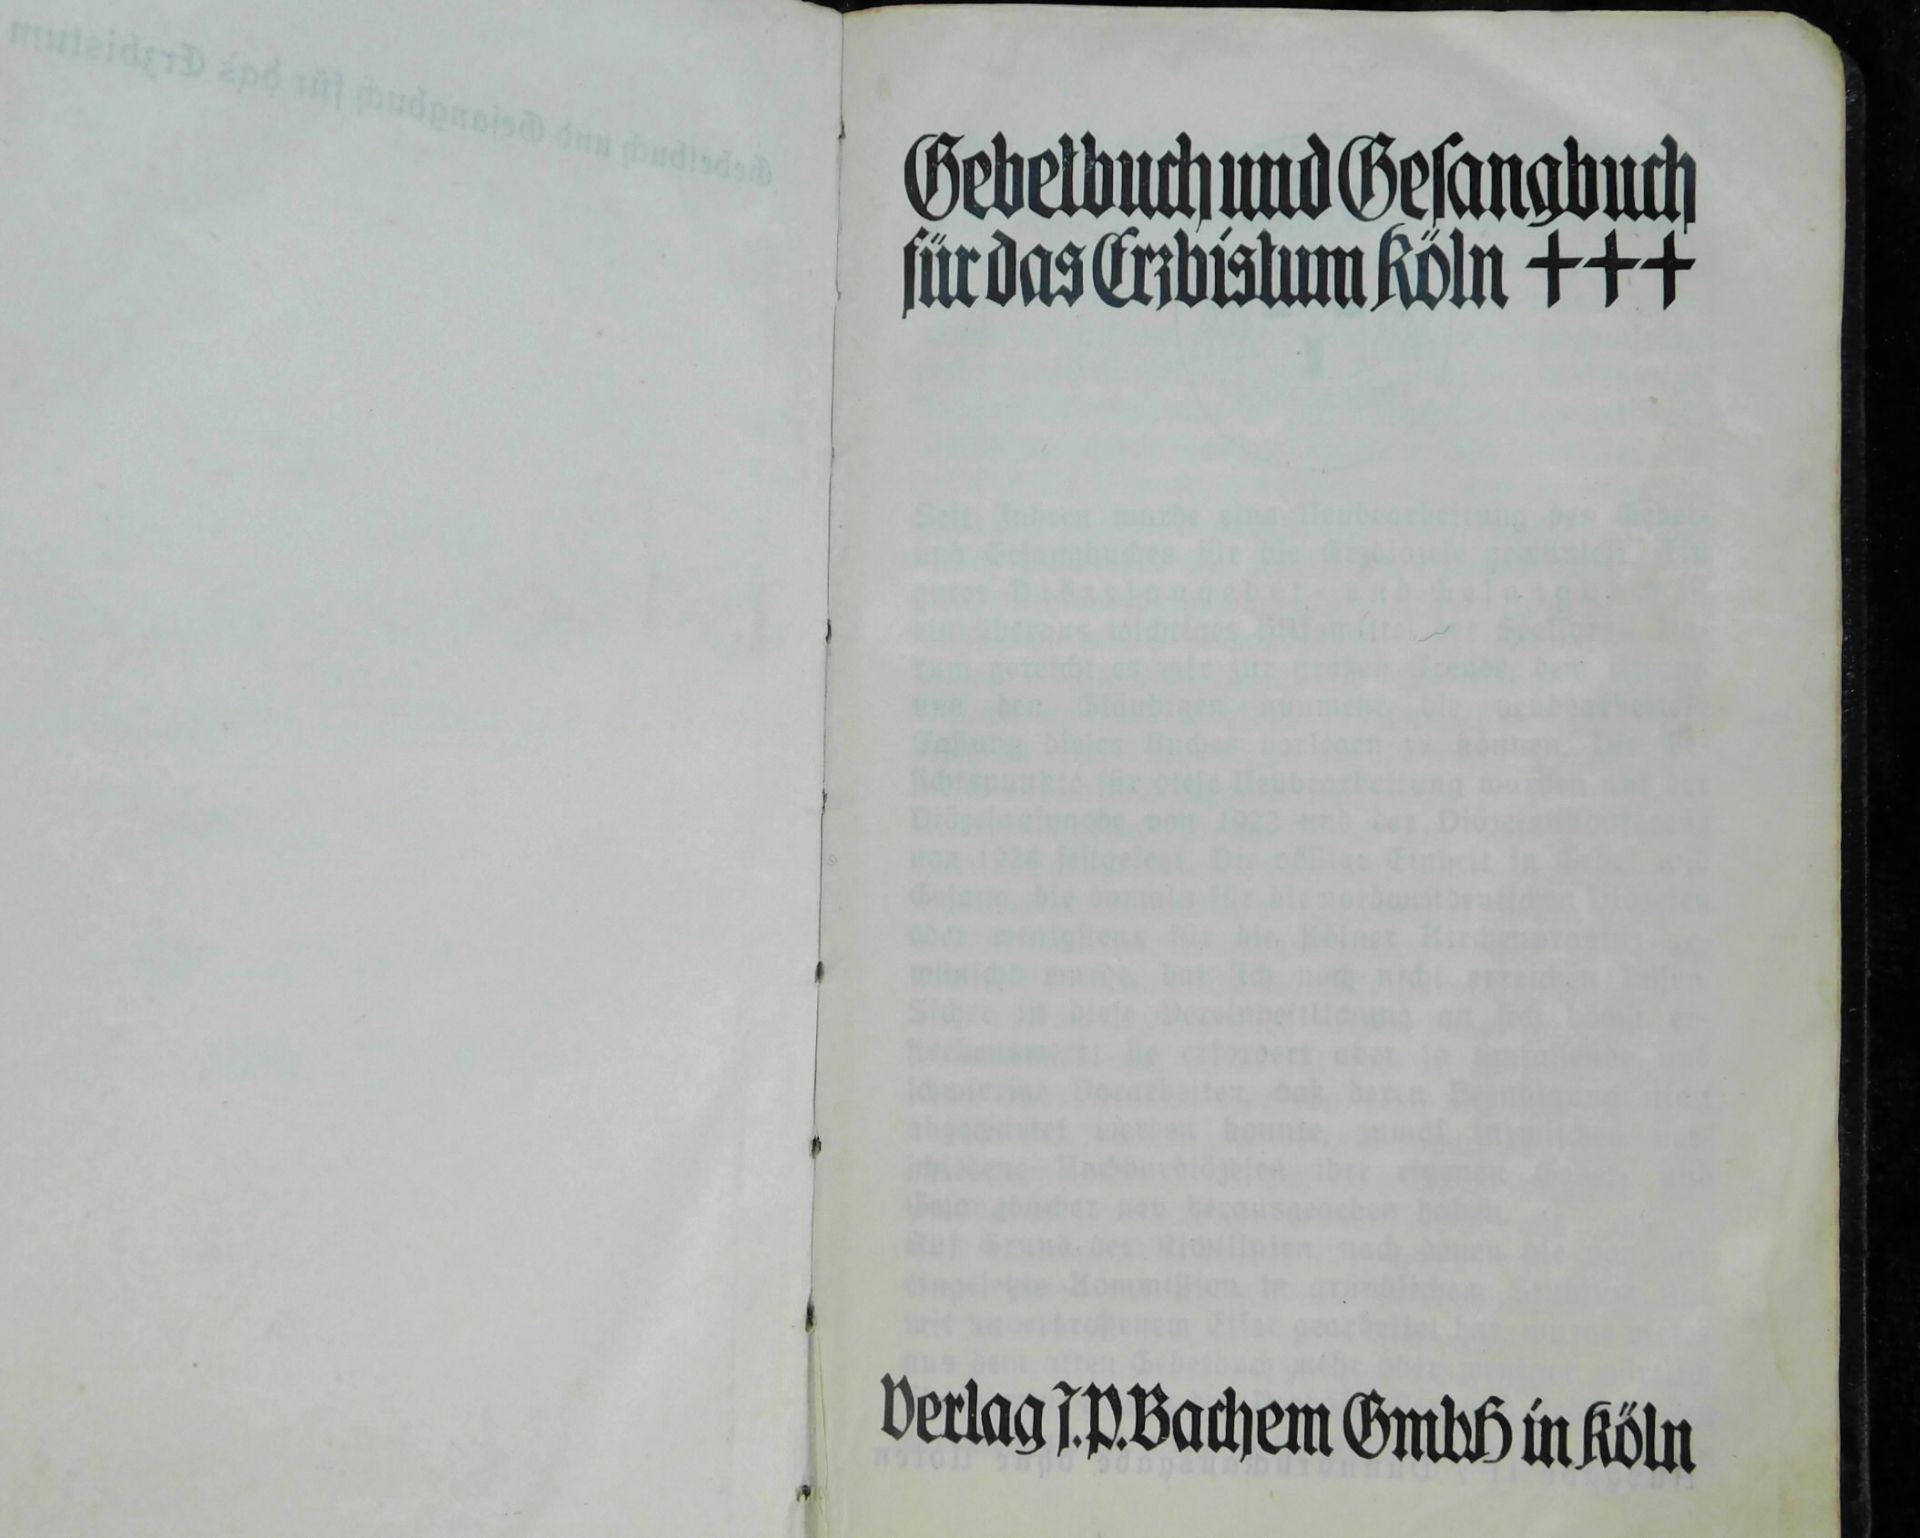 3 Gebetbücher, Nachf. Christi, 1912, Gebet u. gesangbuch Erzbistum Köln, 1935, Kath. Gebetbuch - Bild 5 aus 7